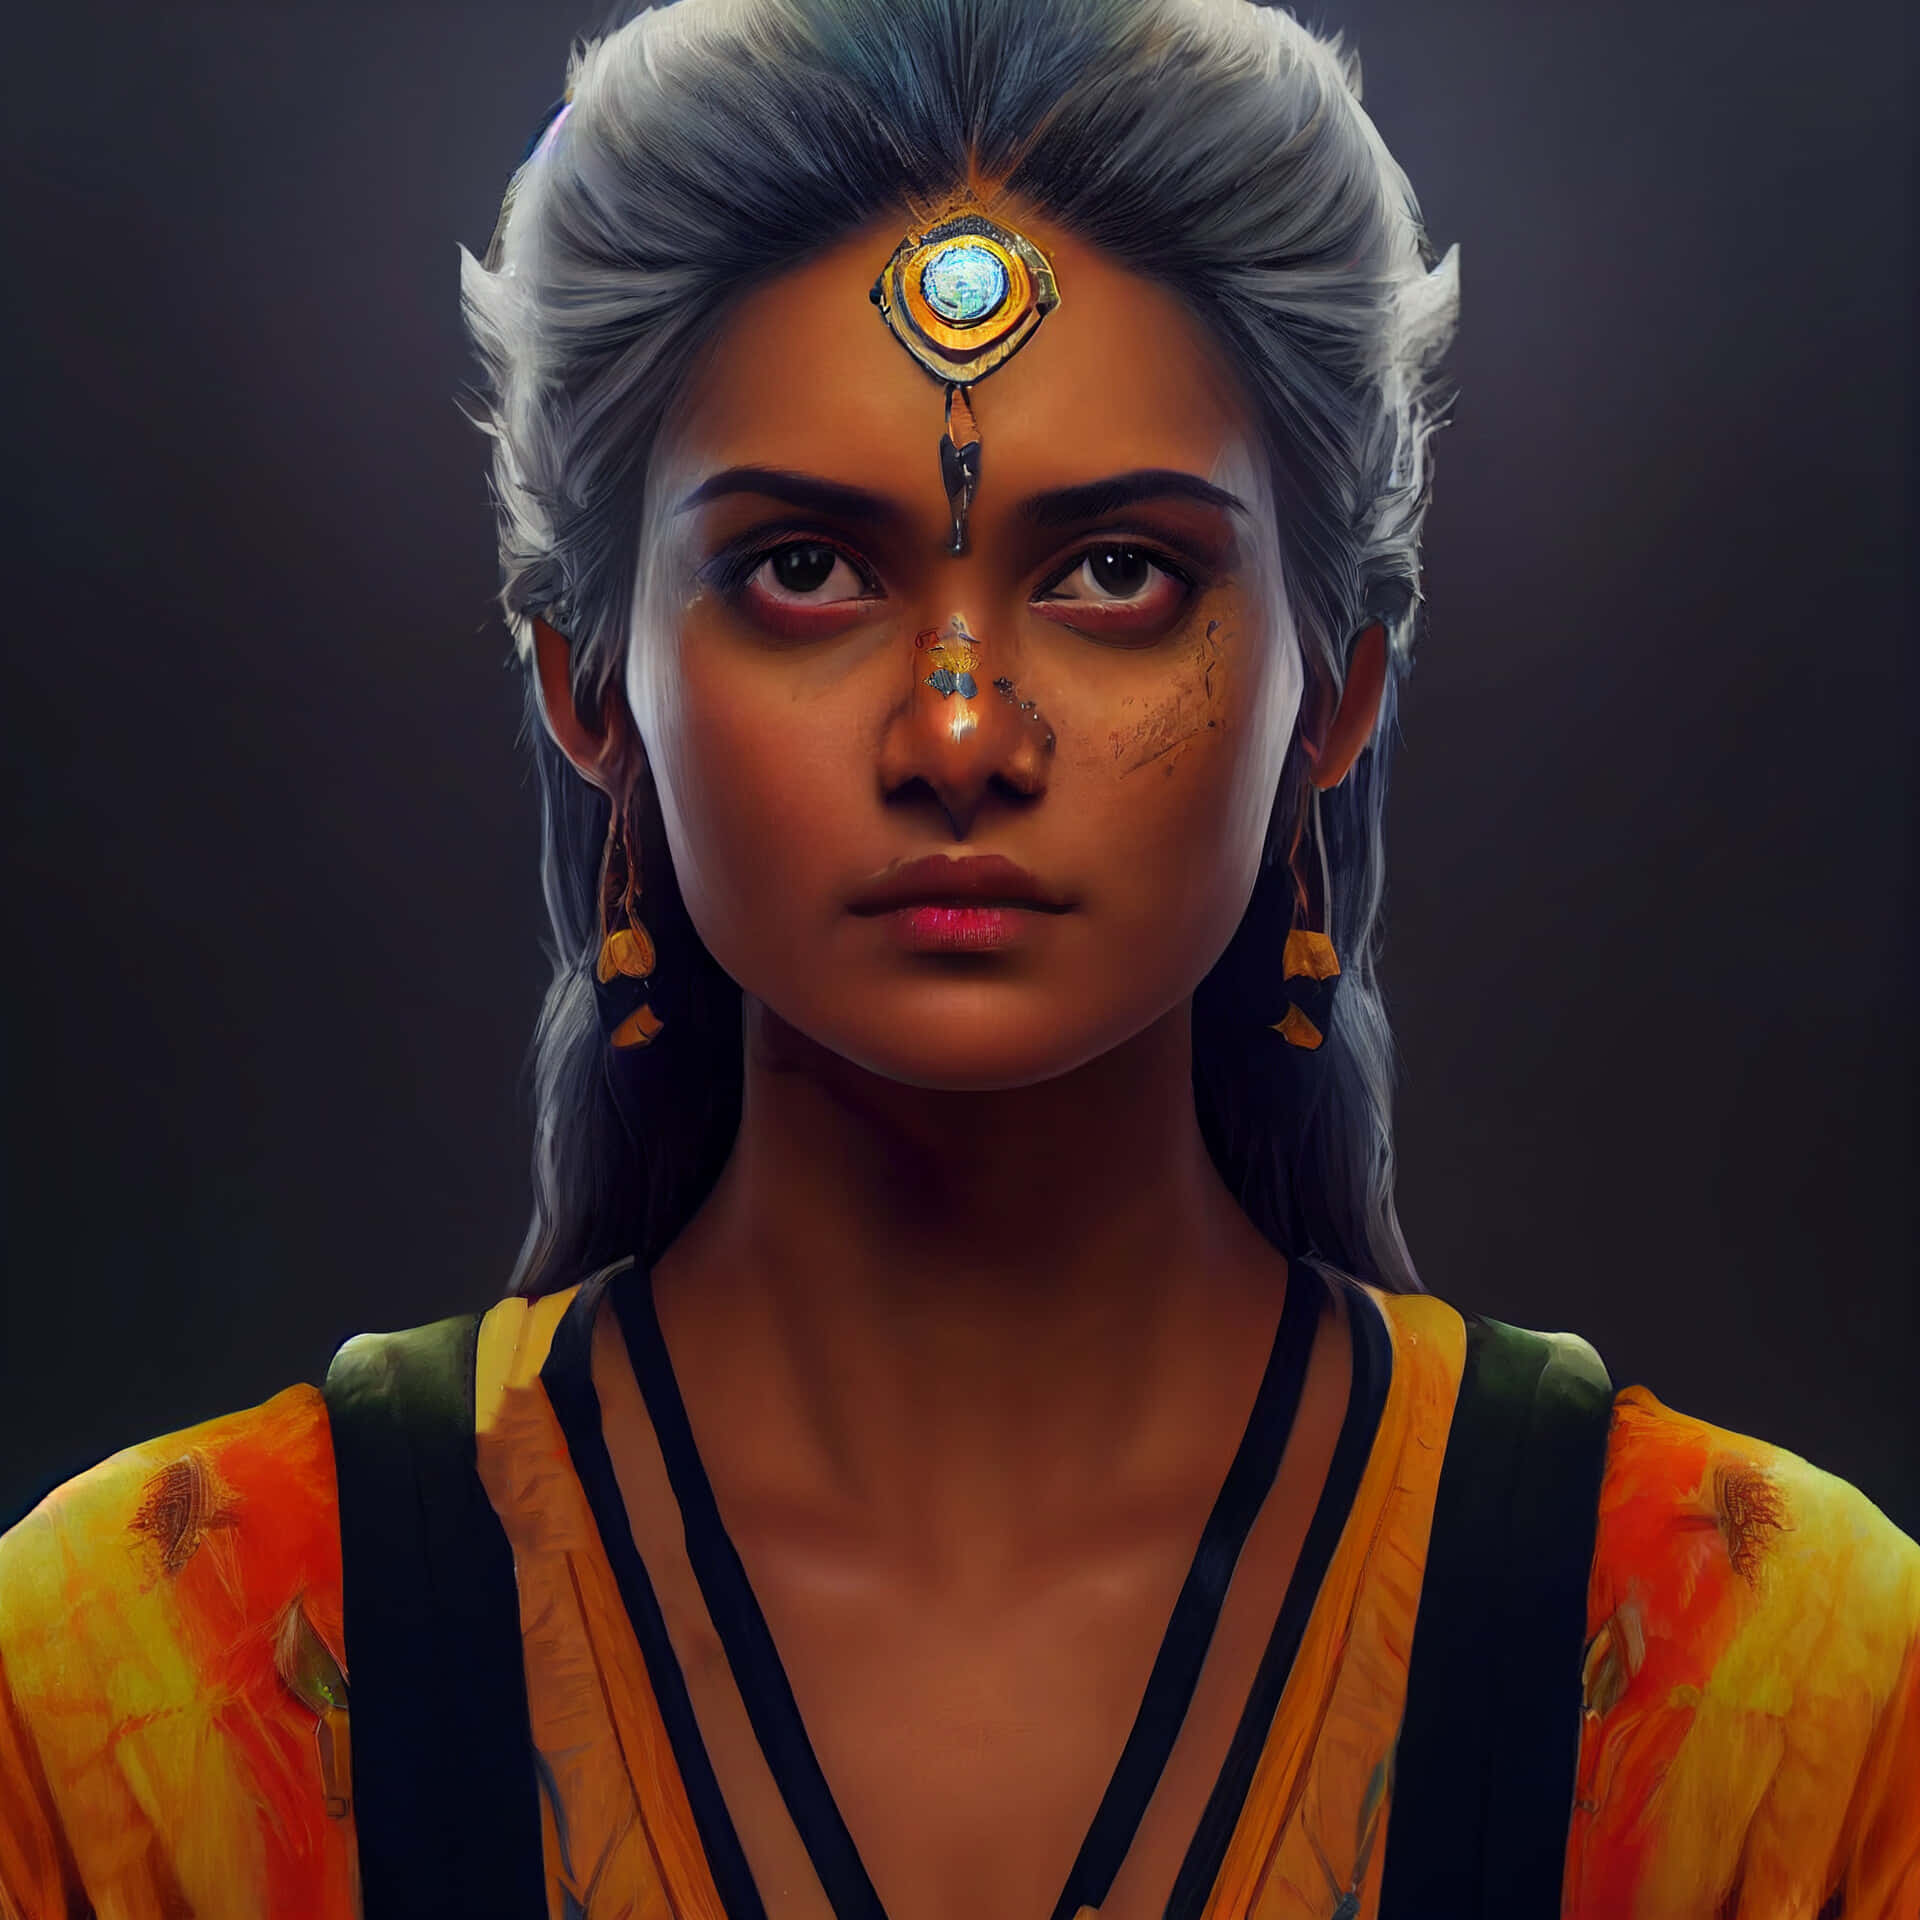 Exquisite Indian Beauty - A Digital Portrait Wallpaper